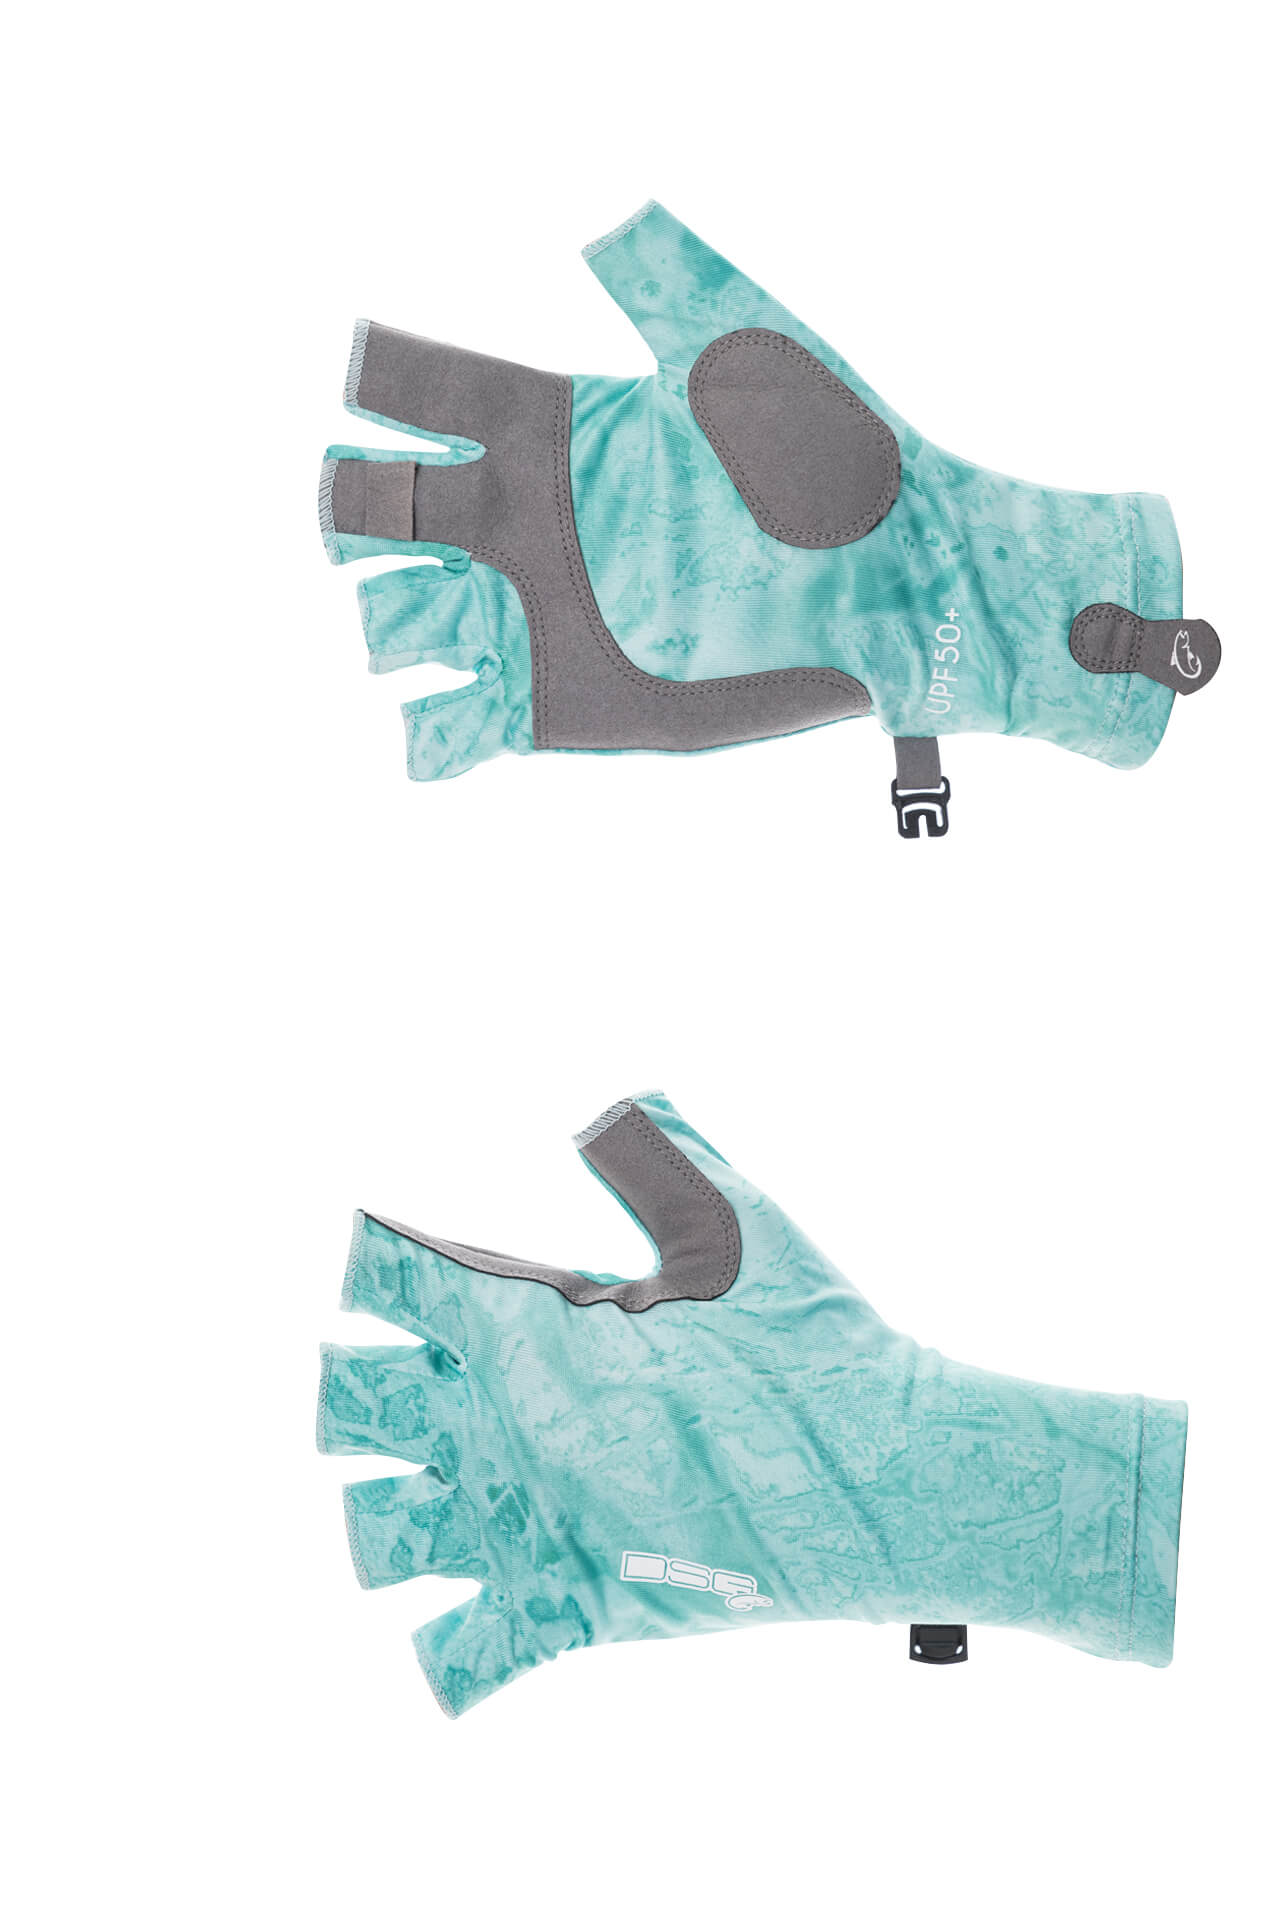 DSG Outerwear UPF Fingerless Fishing Gloves